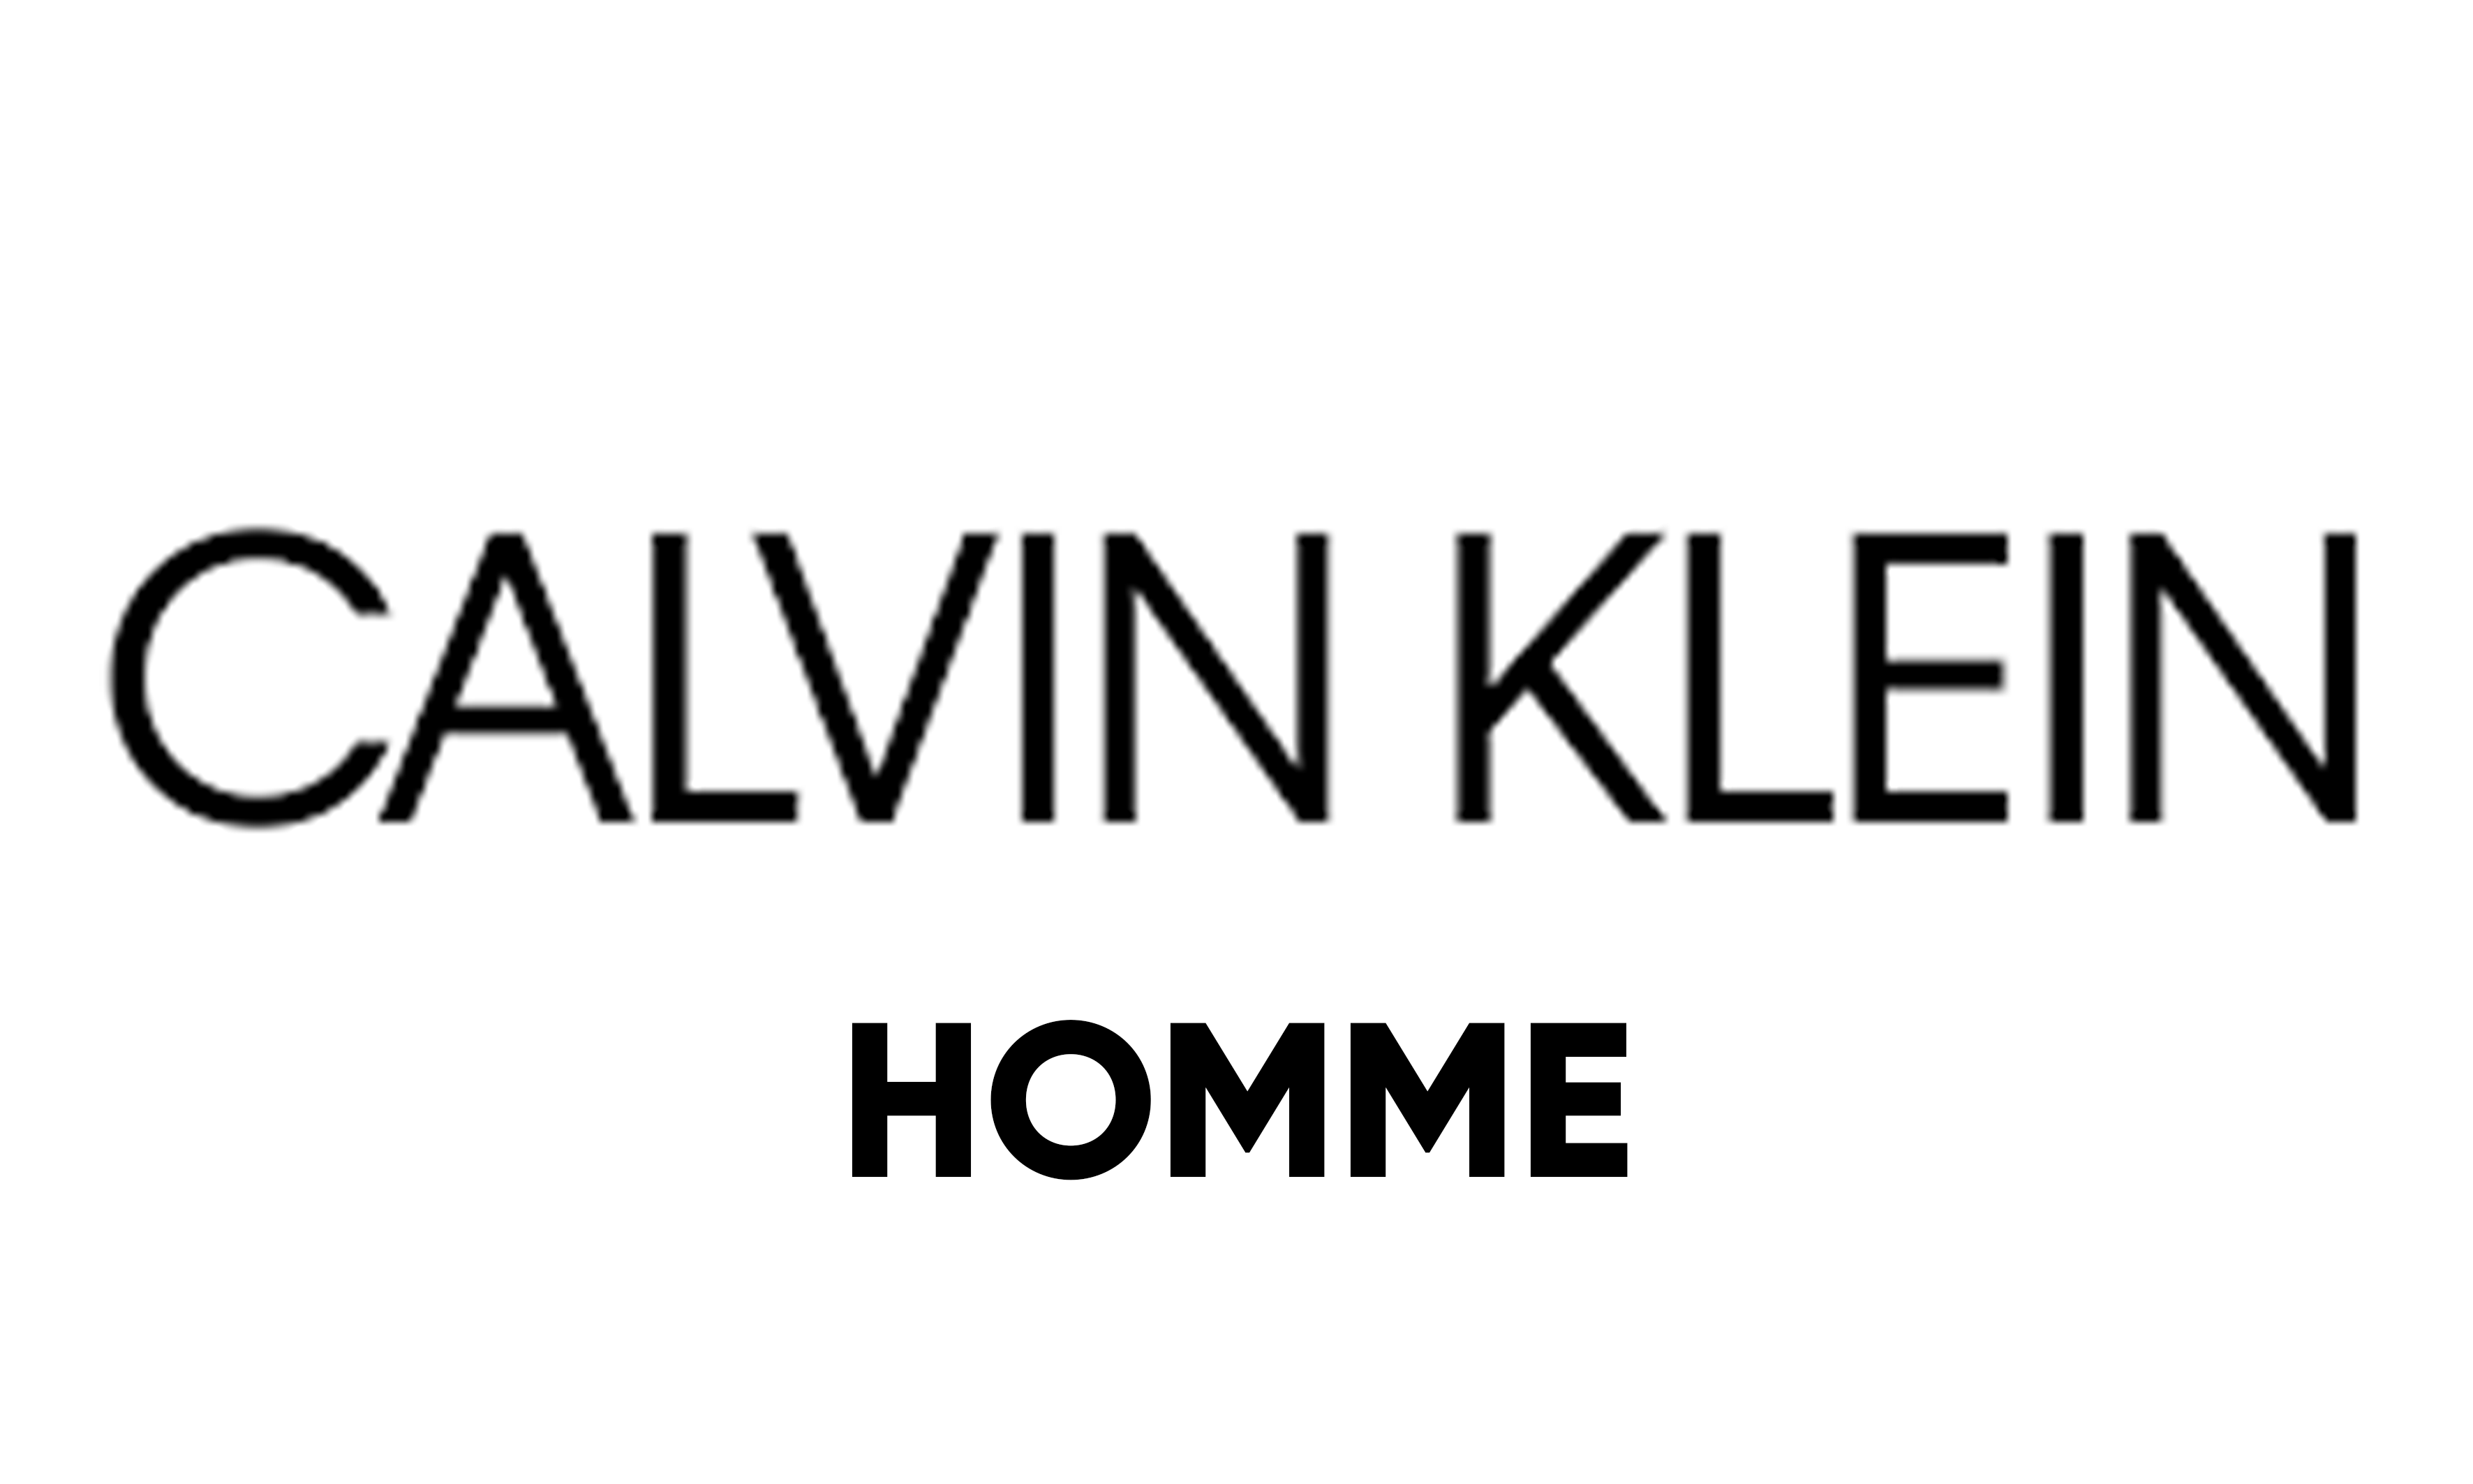 CALVIN KLEIN J.HOMME